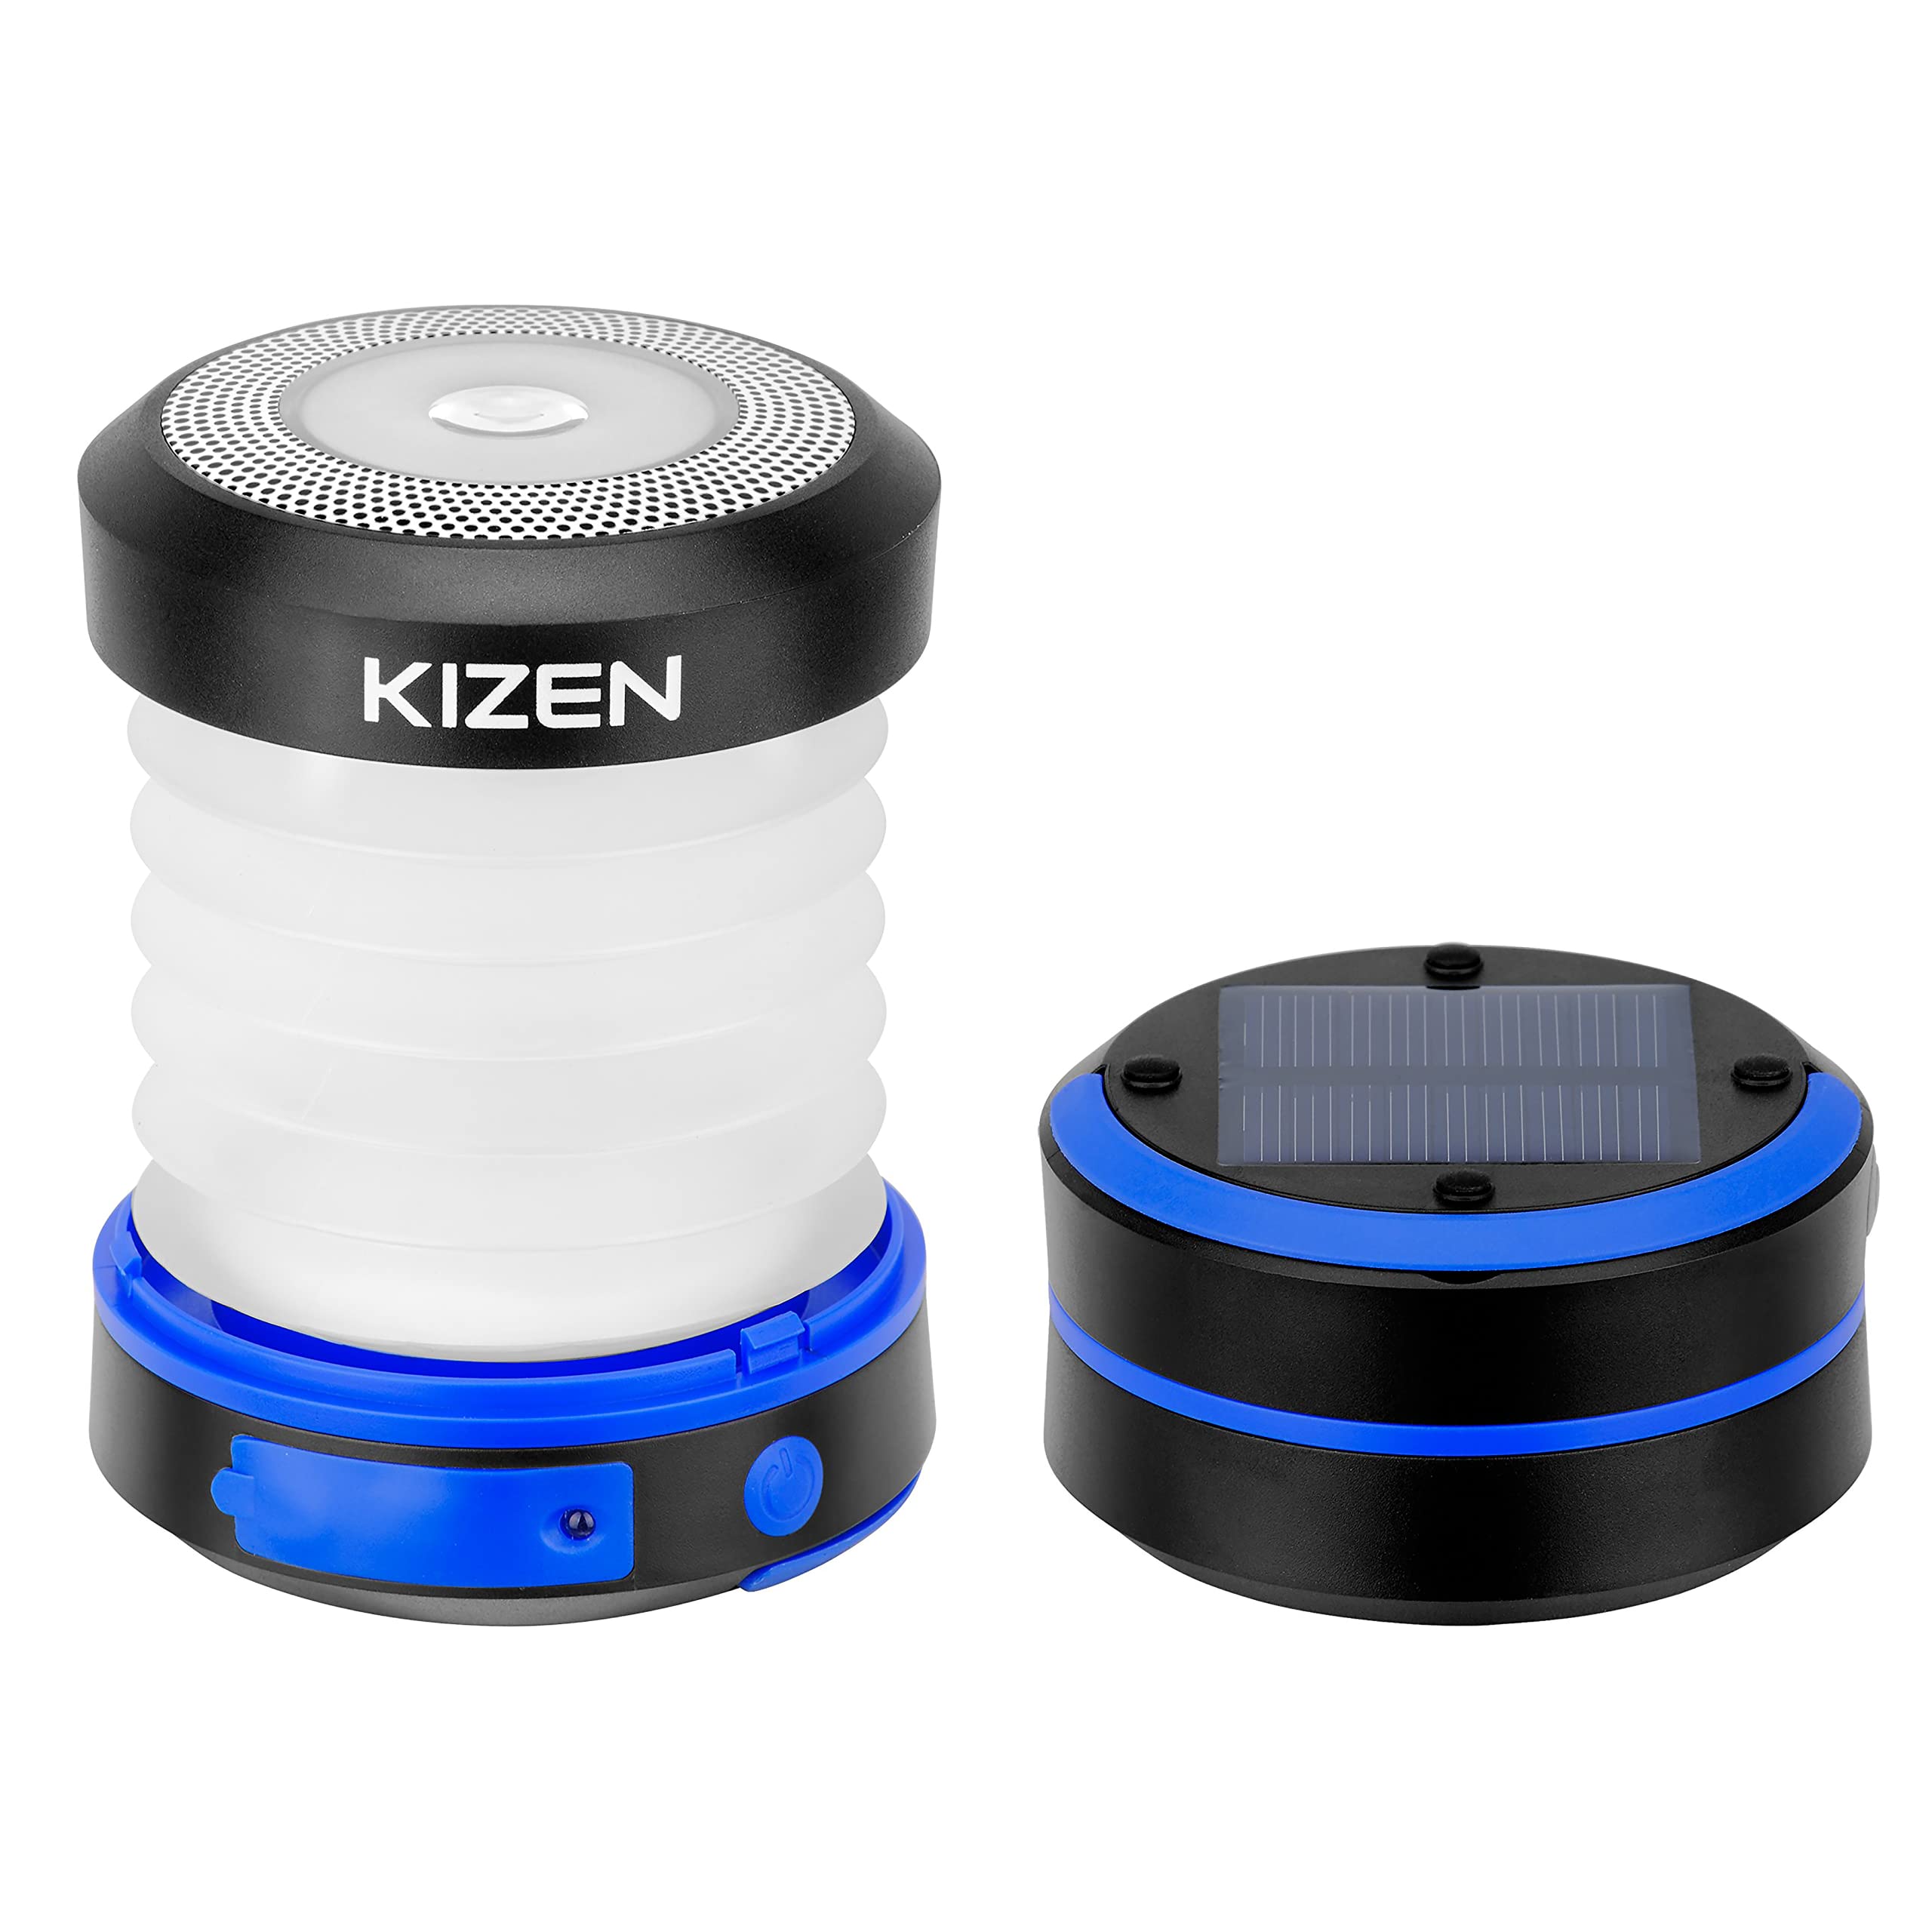 KIZEN Solar Lantern - Collapsible LED Camping Lantern